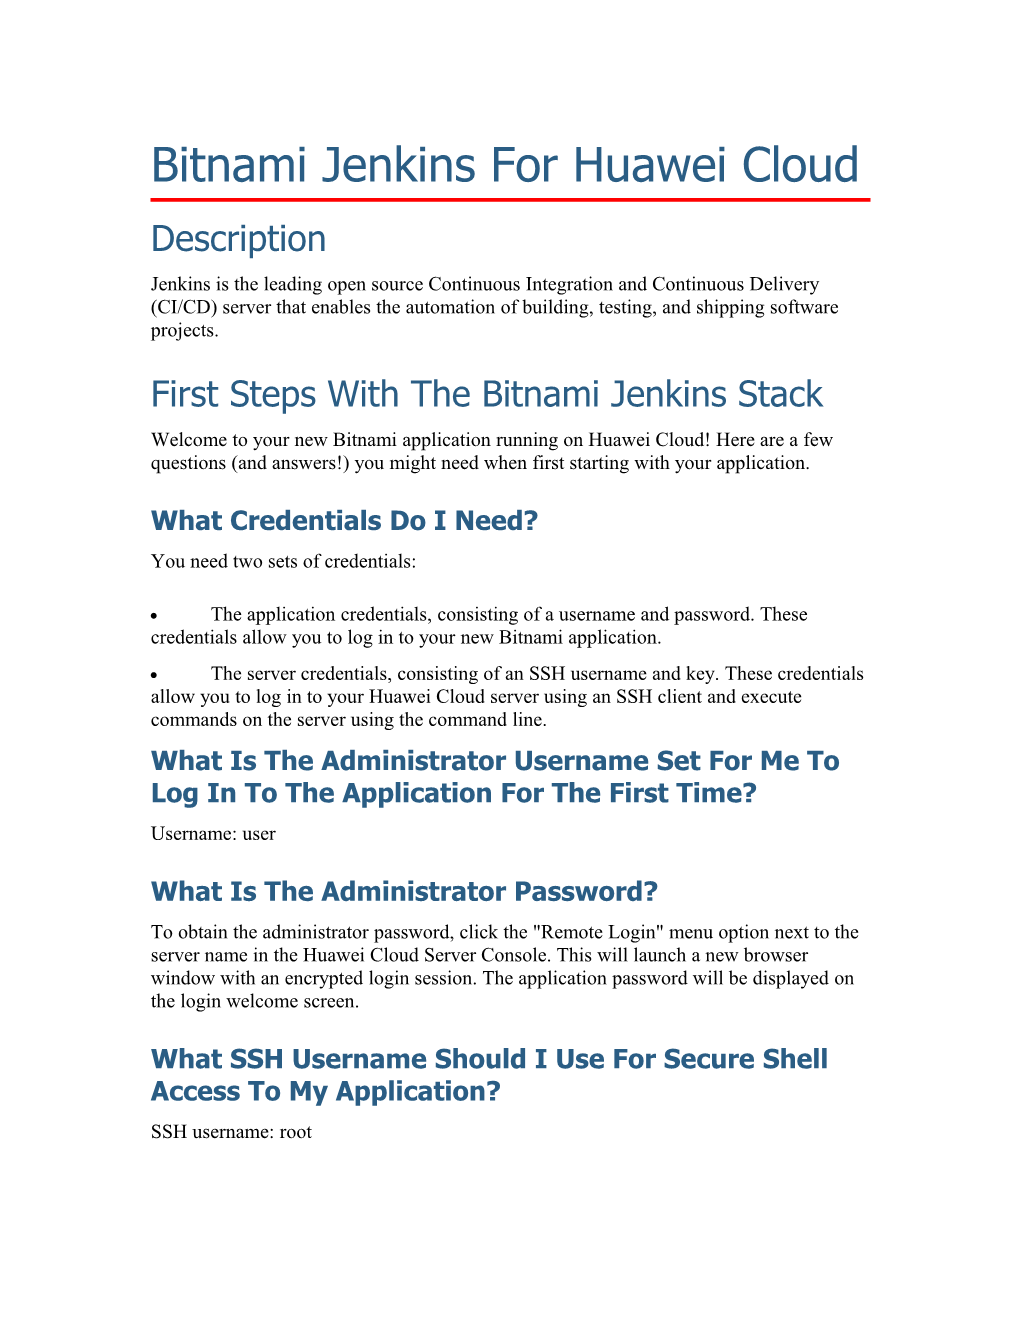 Bitnami Jenkins for Huawei Cloud